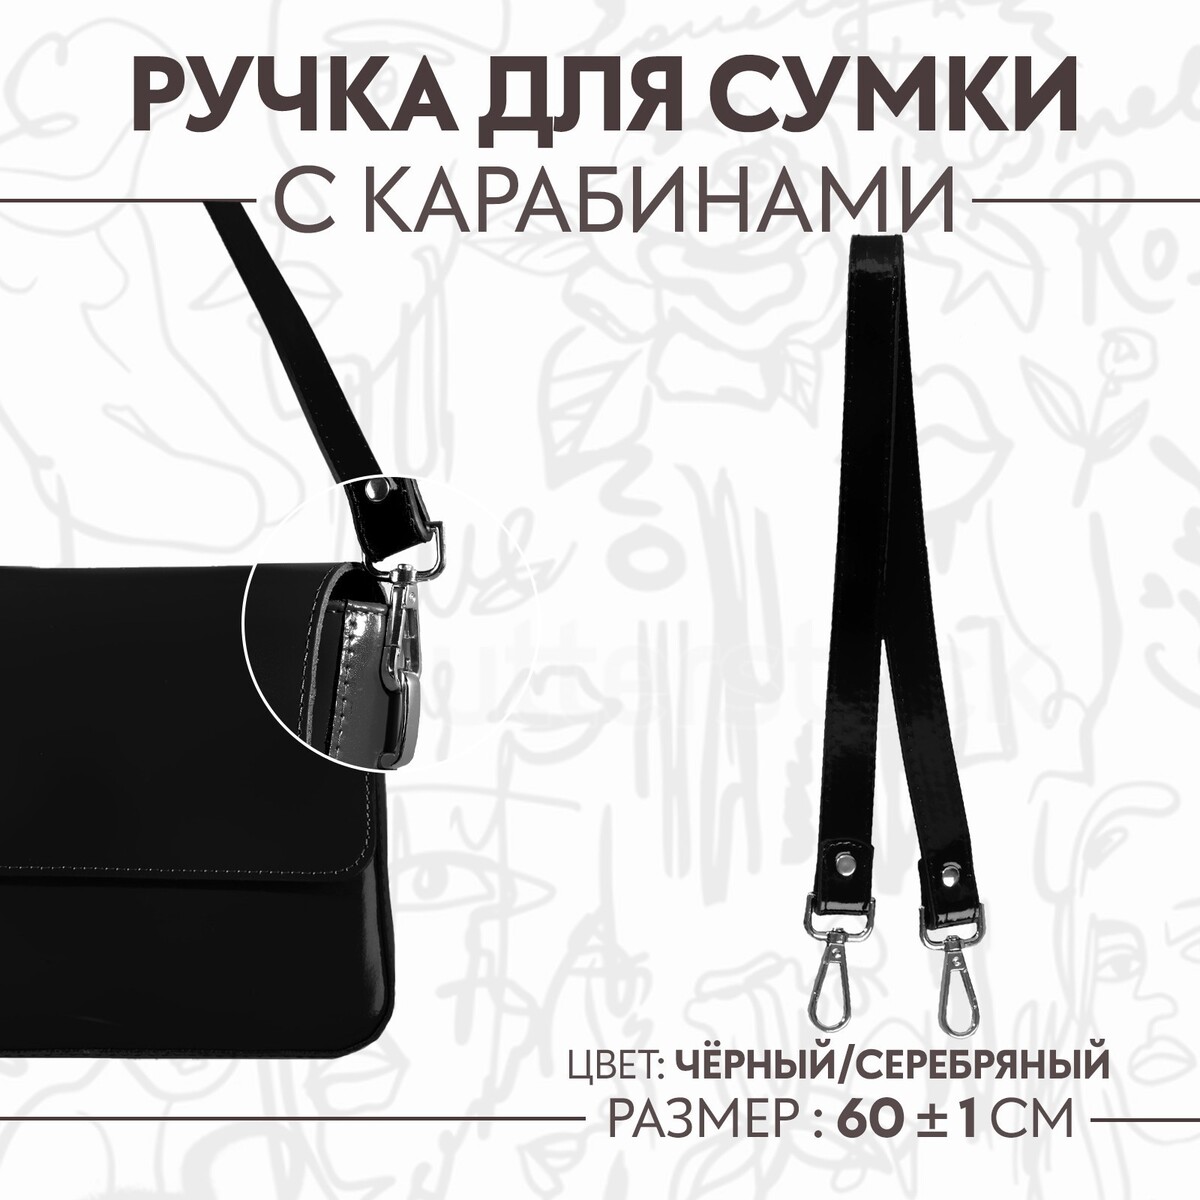 Ручка для сумки лакированная, с карабинами, 60 ± 1 см, цвет черный